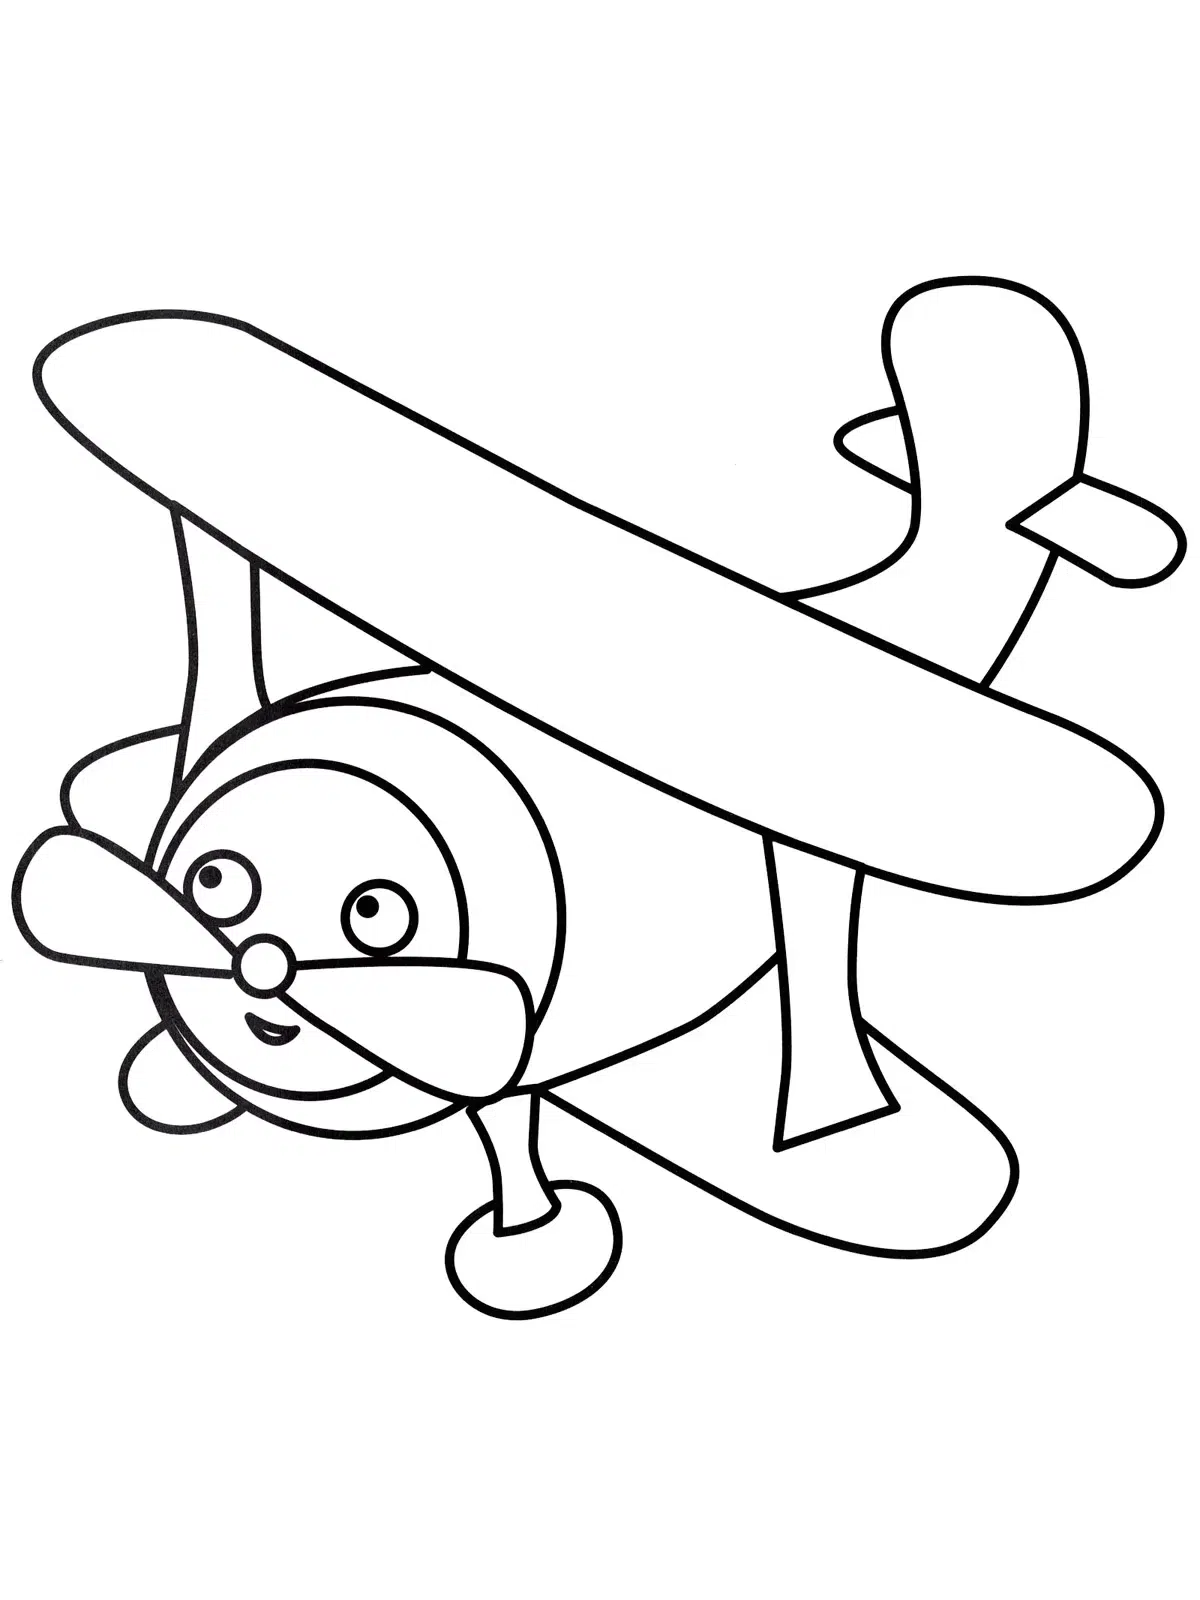 Ausmalbilder Flugzeug für Kleinkinder